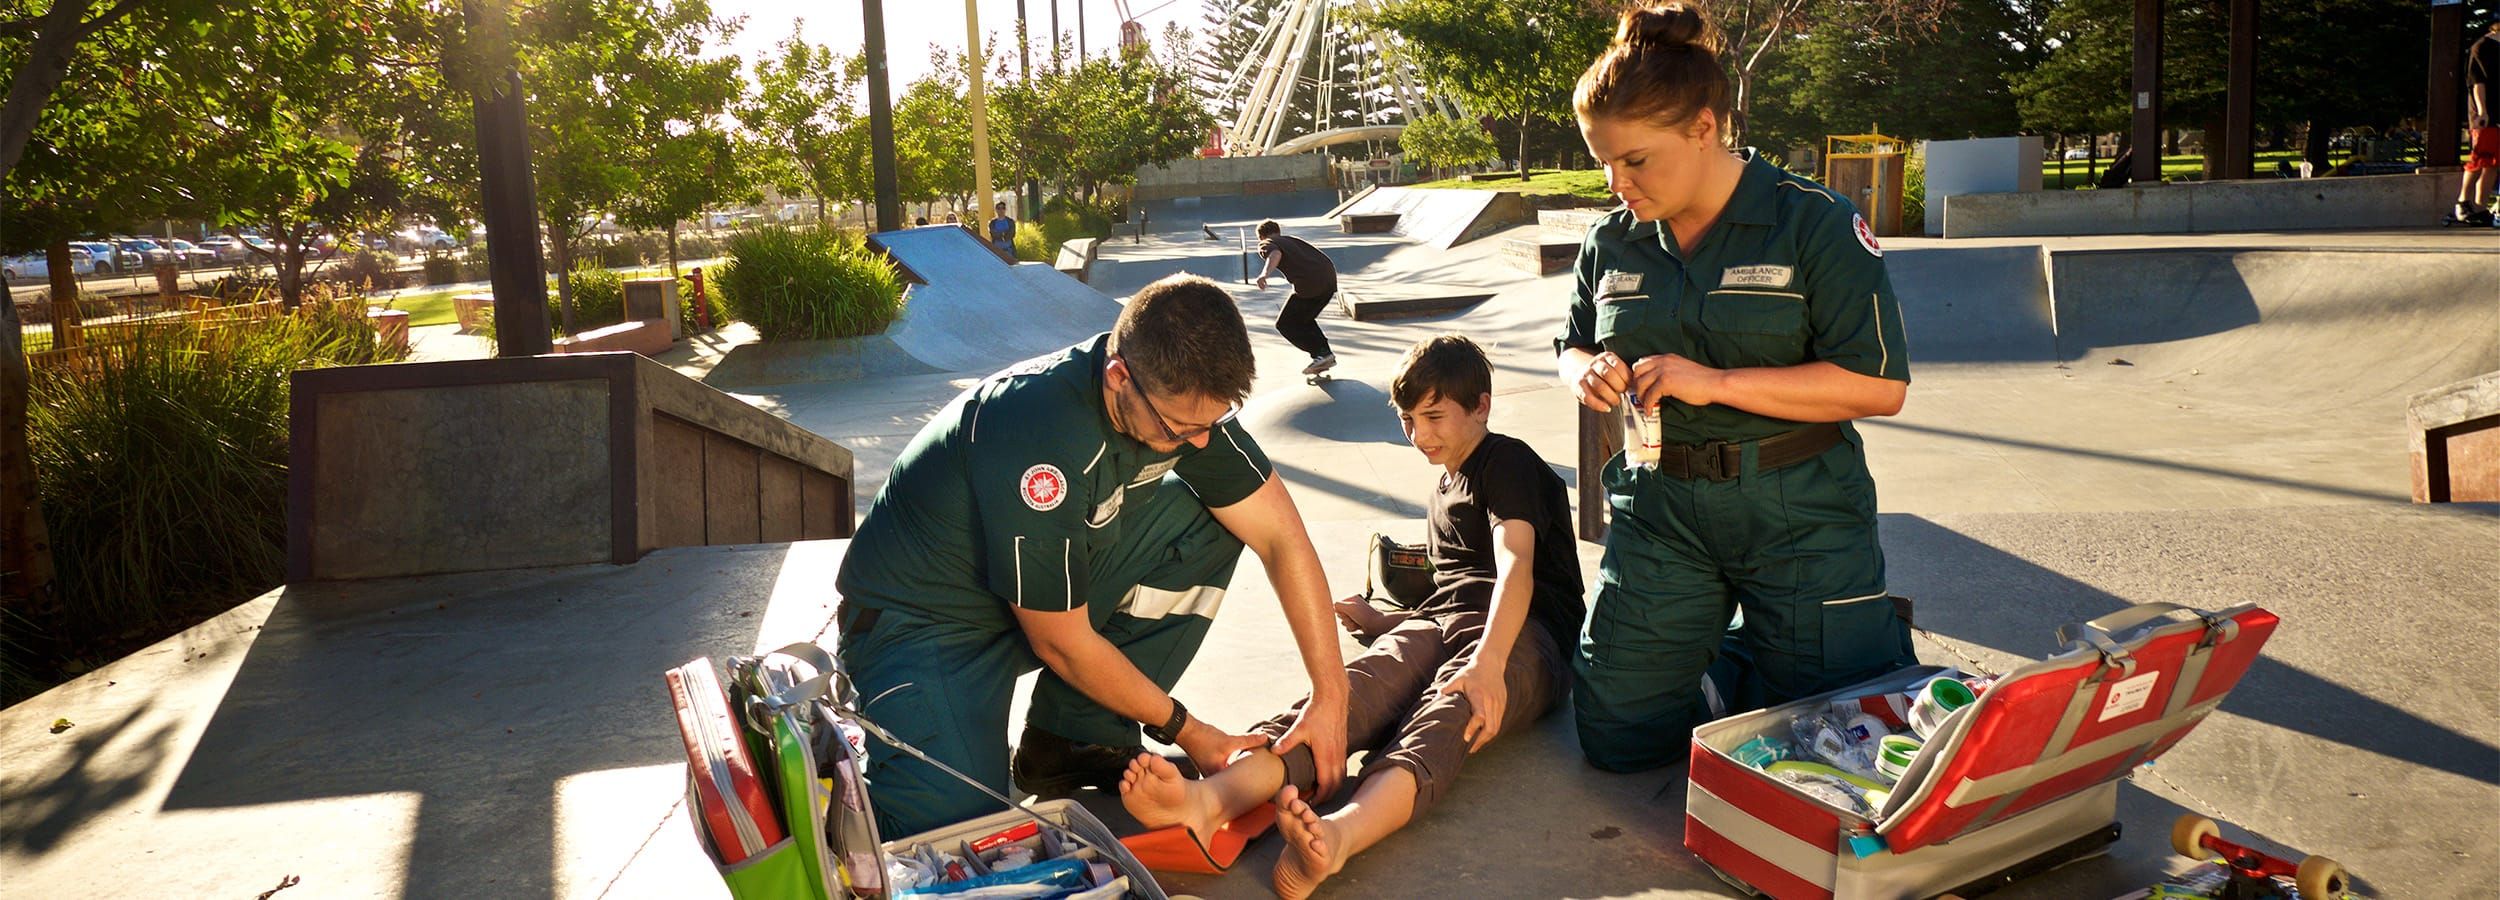 paramedics attending an injured boy